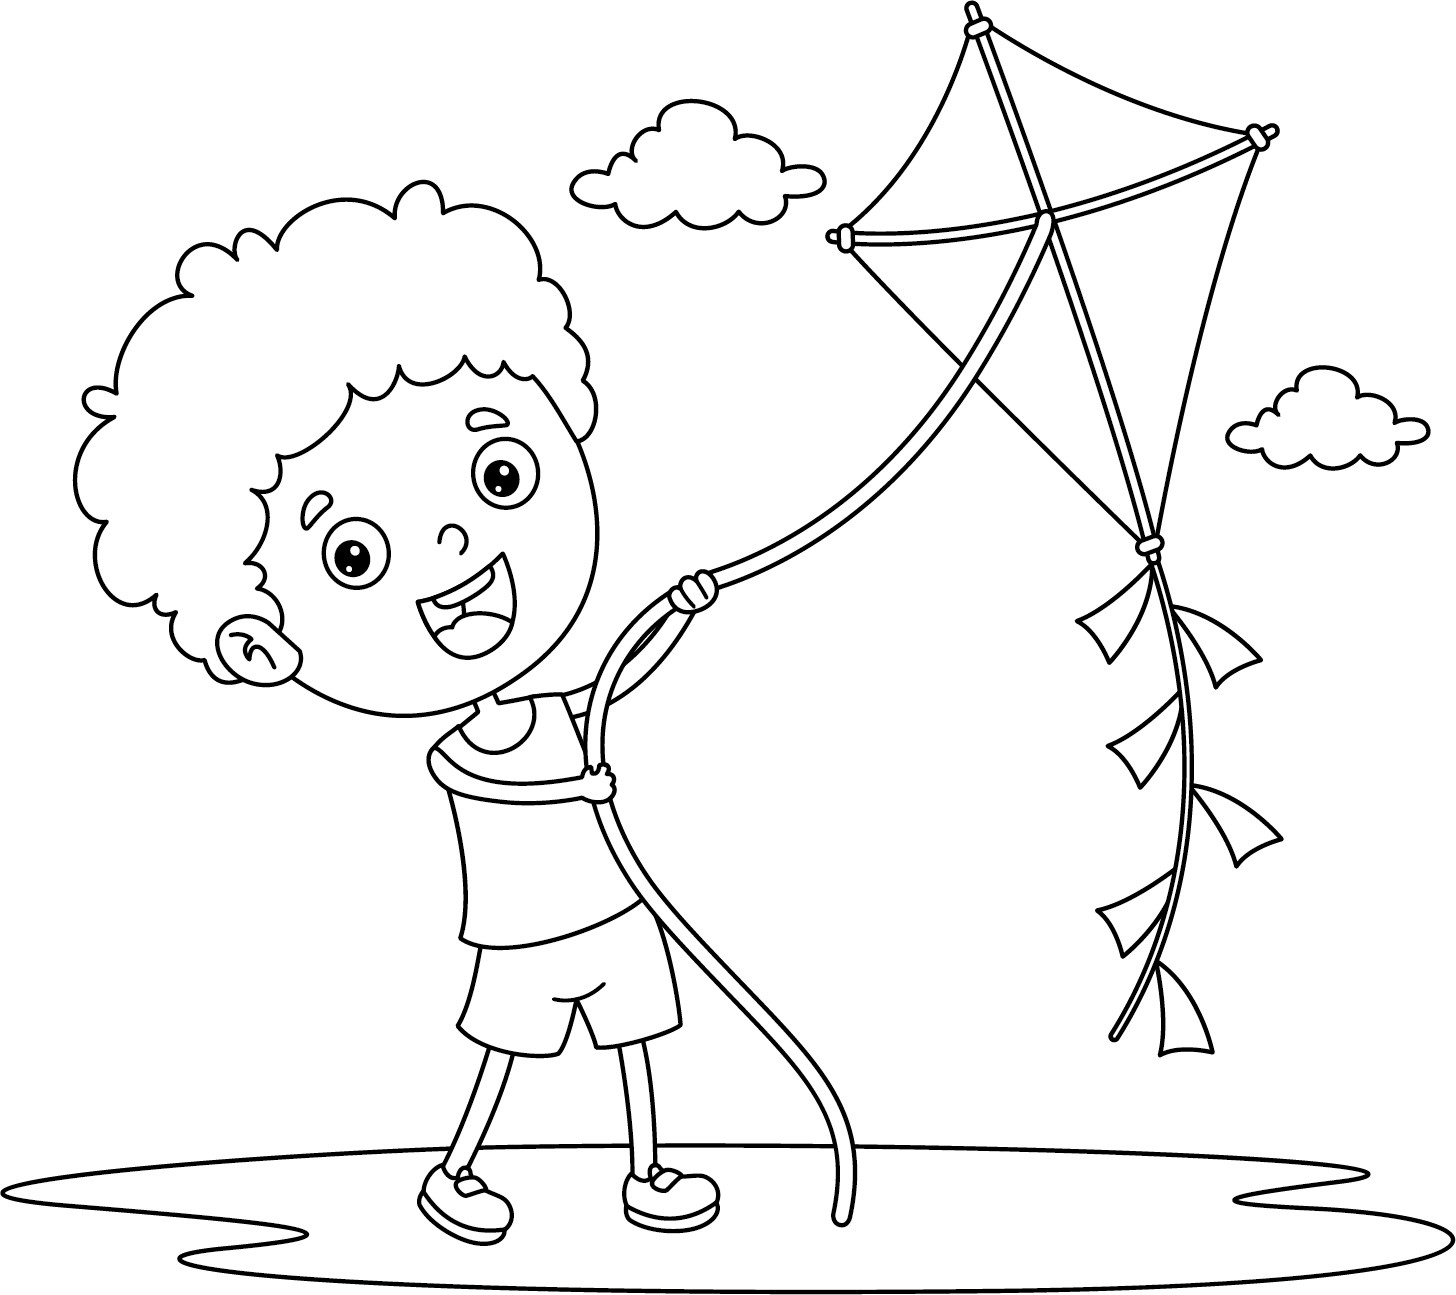 Раскраска для детей: малыш играет с воздушным змеем на улице